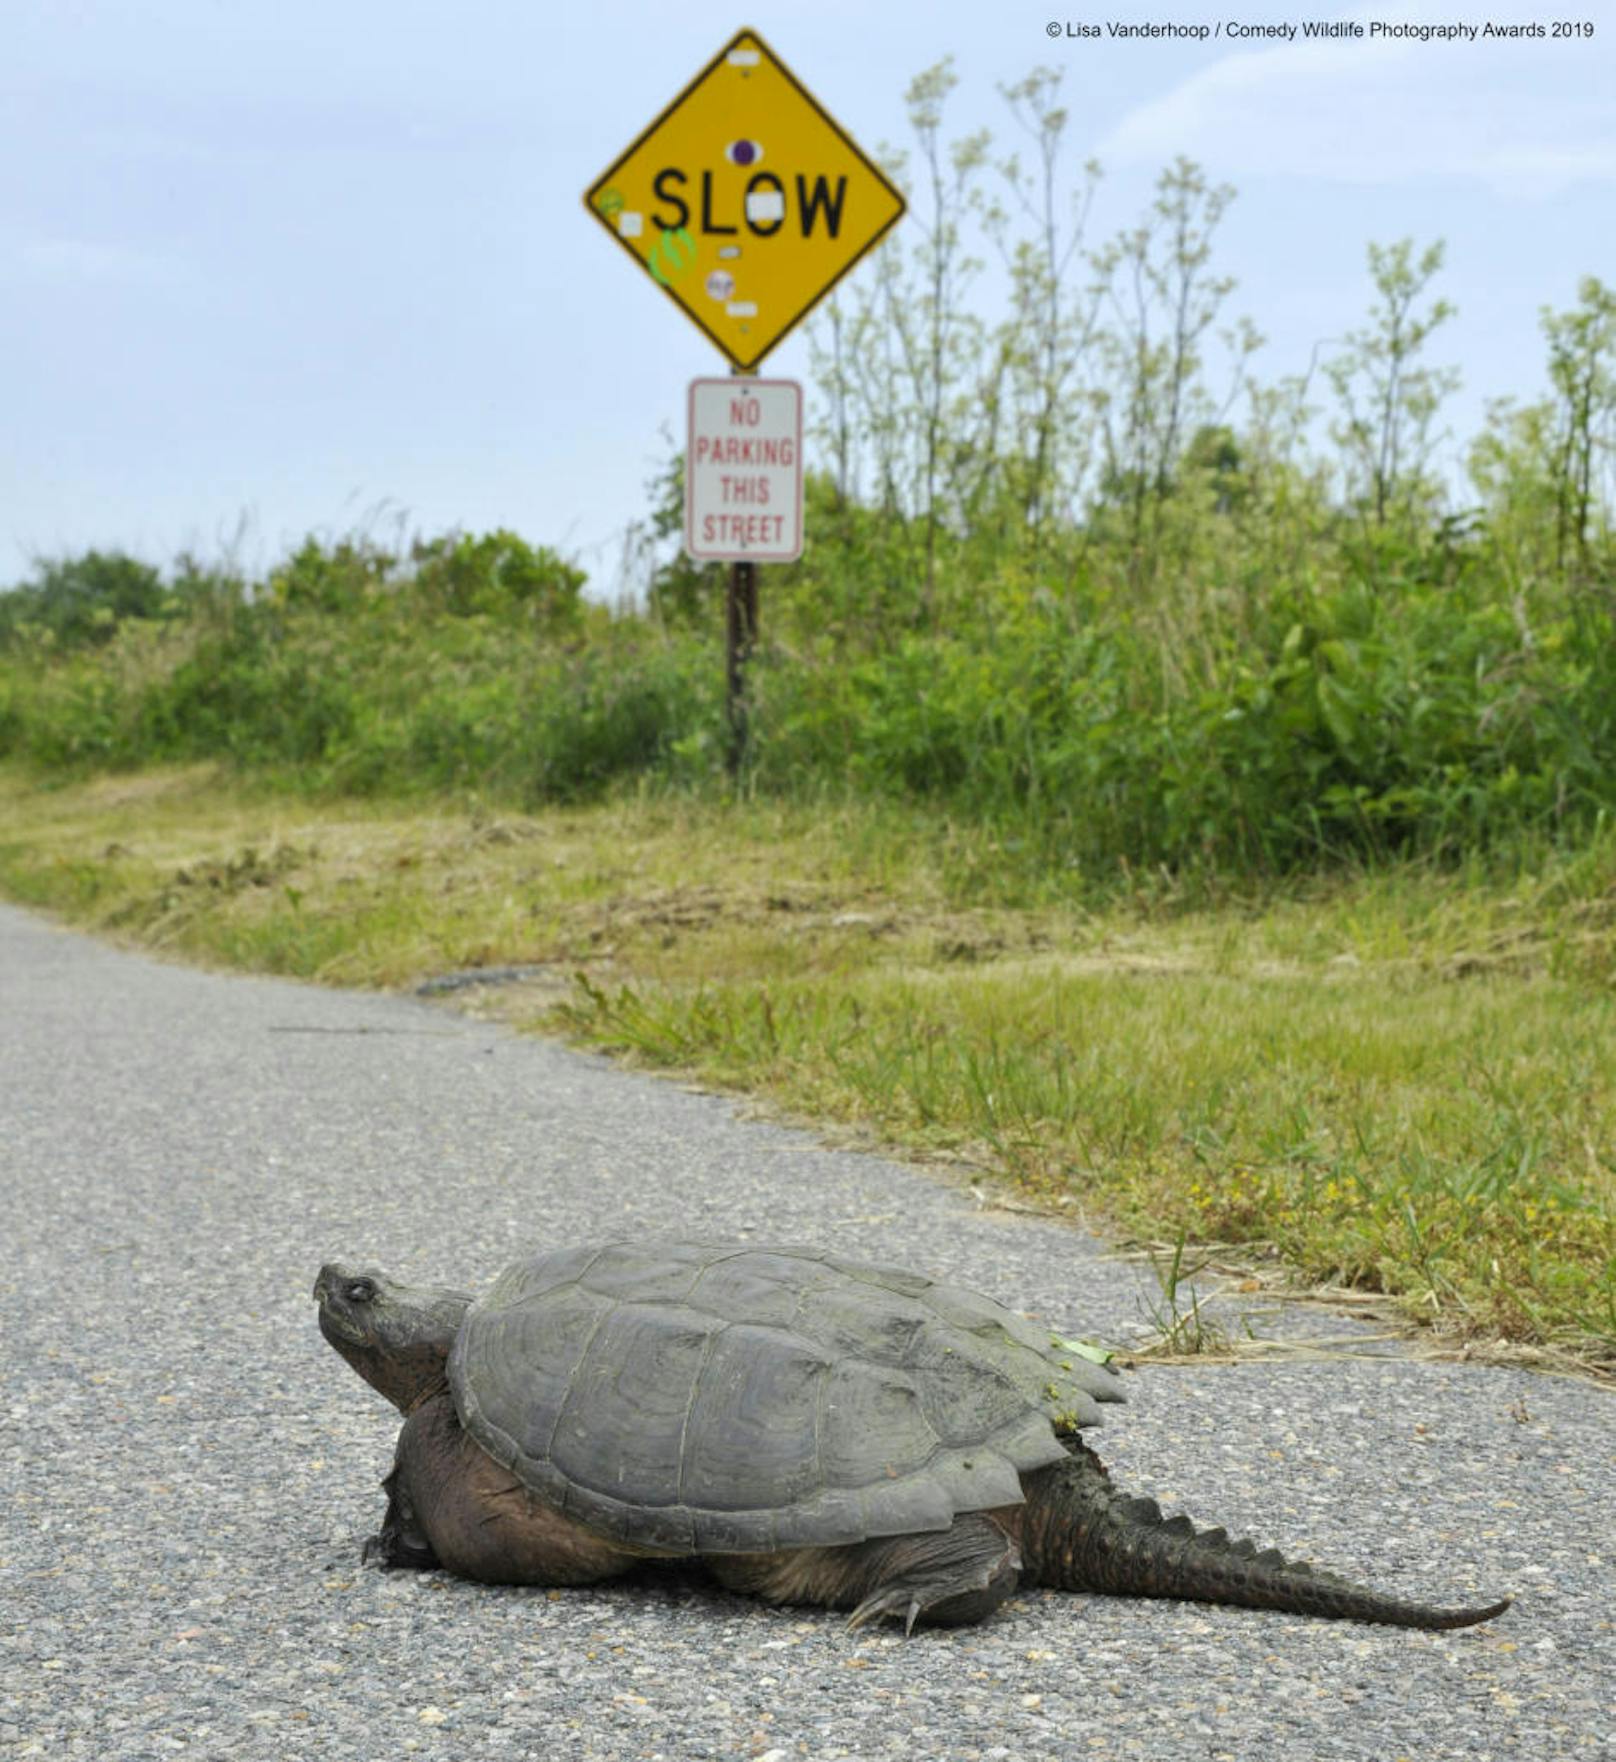 "Snarling Snappin' in the Slow Lane" "Schnappschildkröte auf der langsamen Spur"